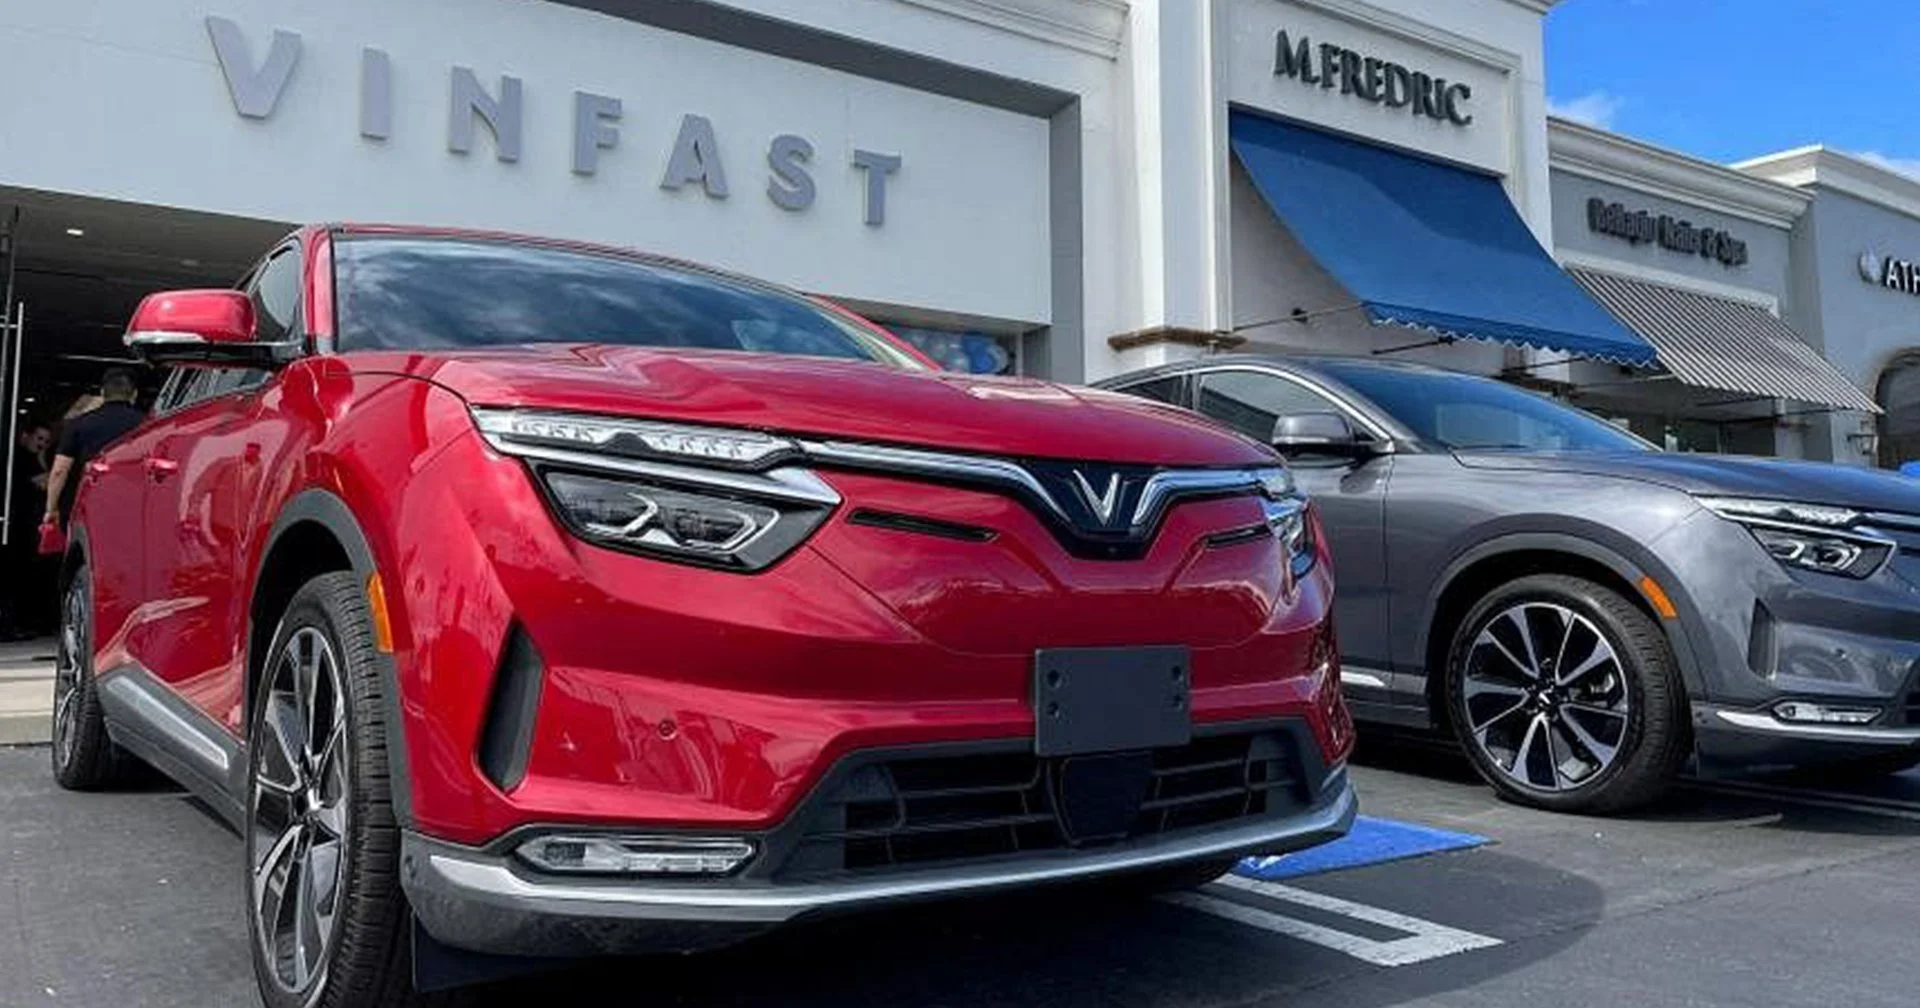 เจ้าของ VinFast รถ EV เวียดนาม รวยขึ้น 1.4 ล้านล้านบาทในวันเดียว หลังเข้าตลาดหุ้น Nasdaq